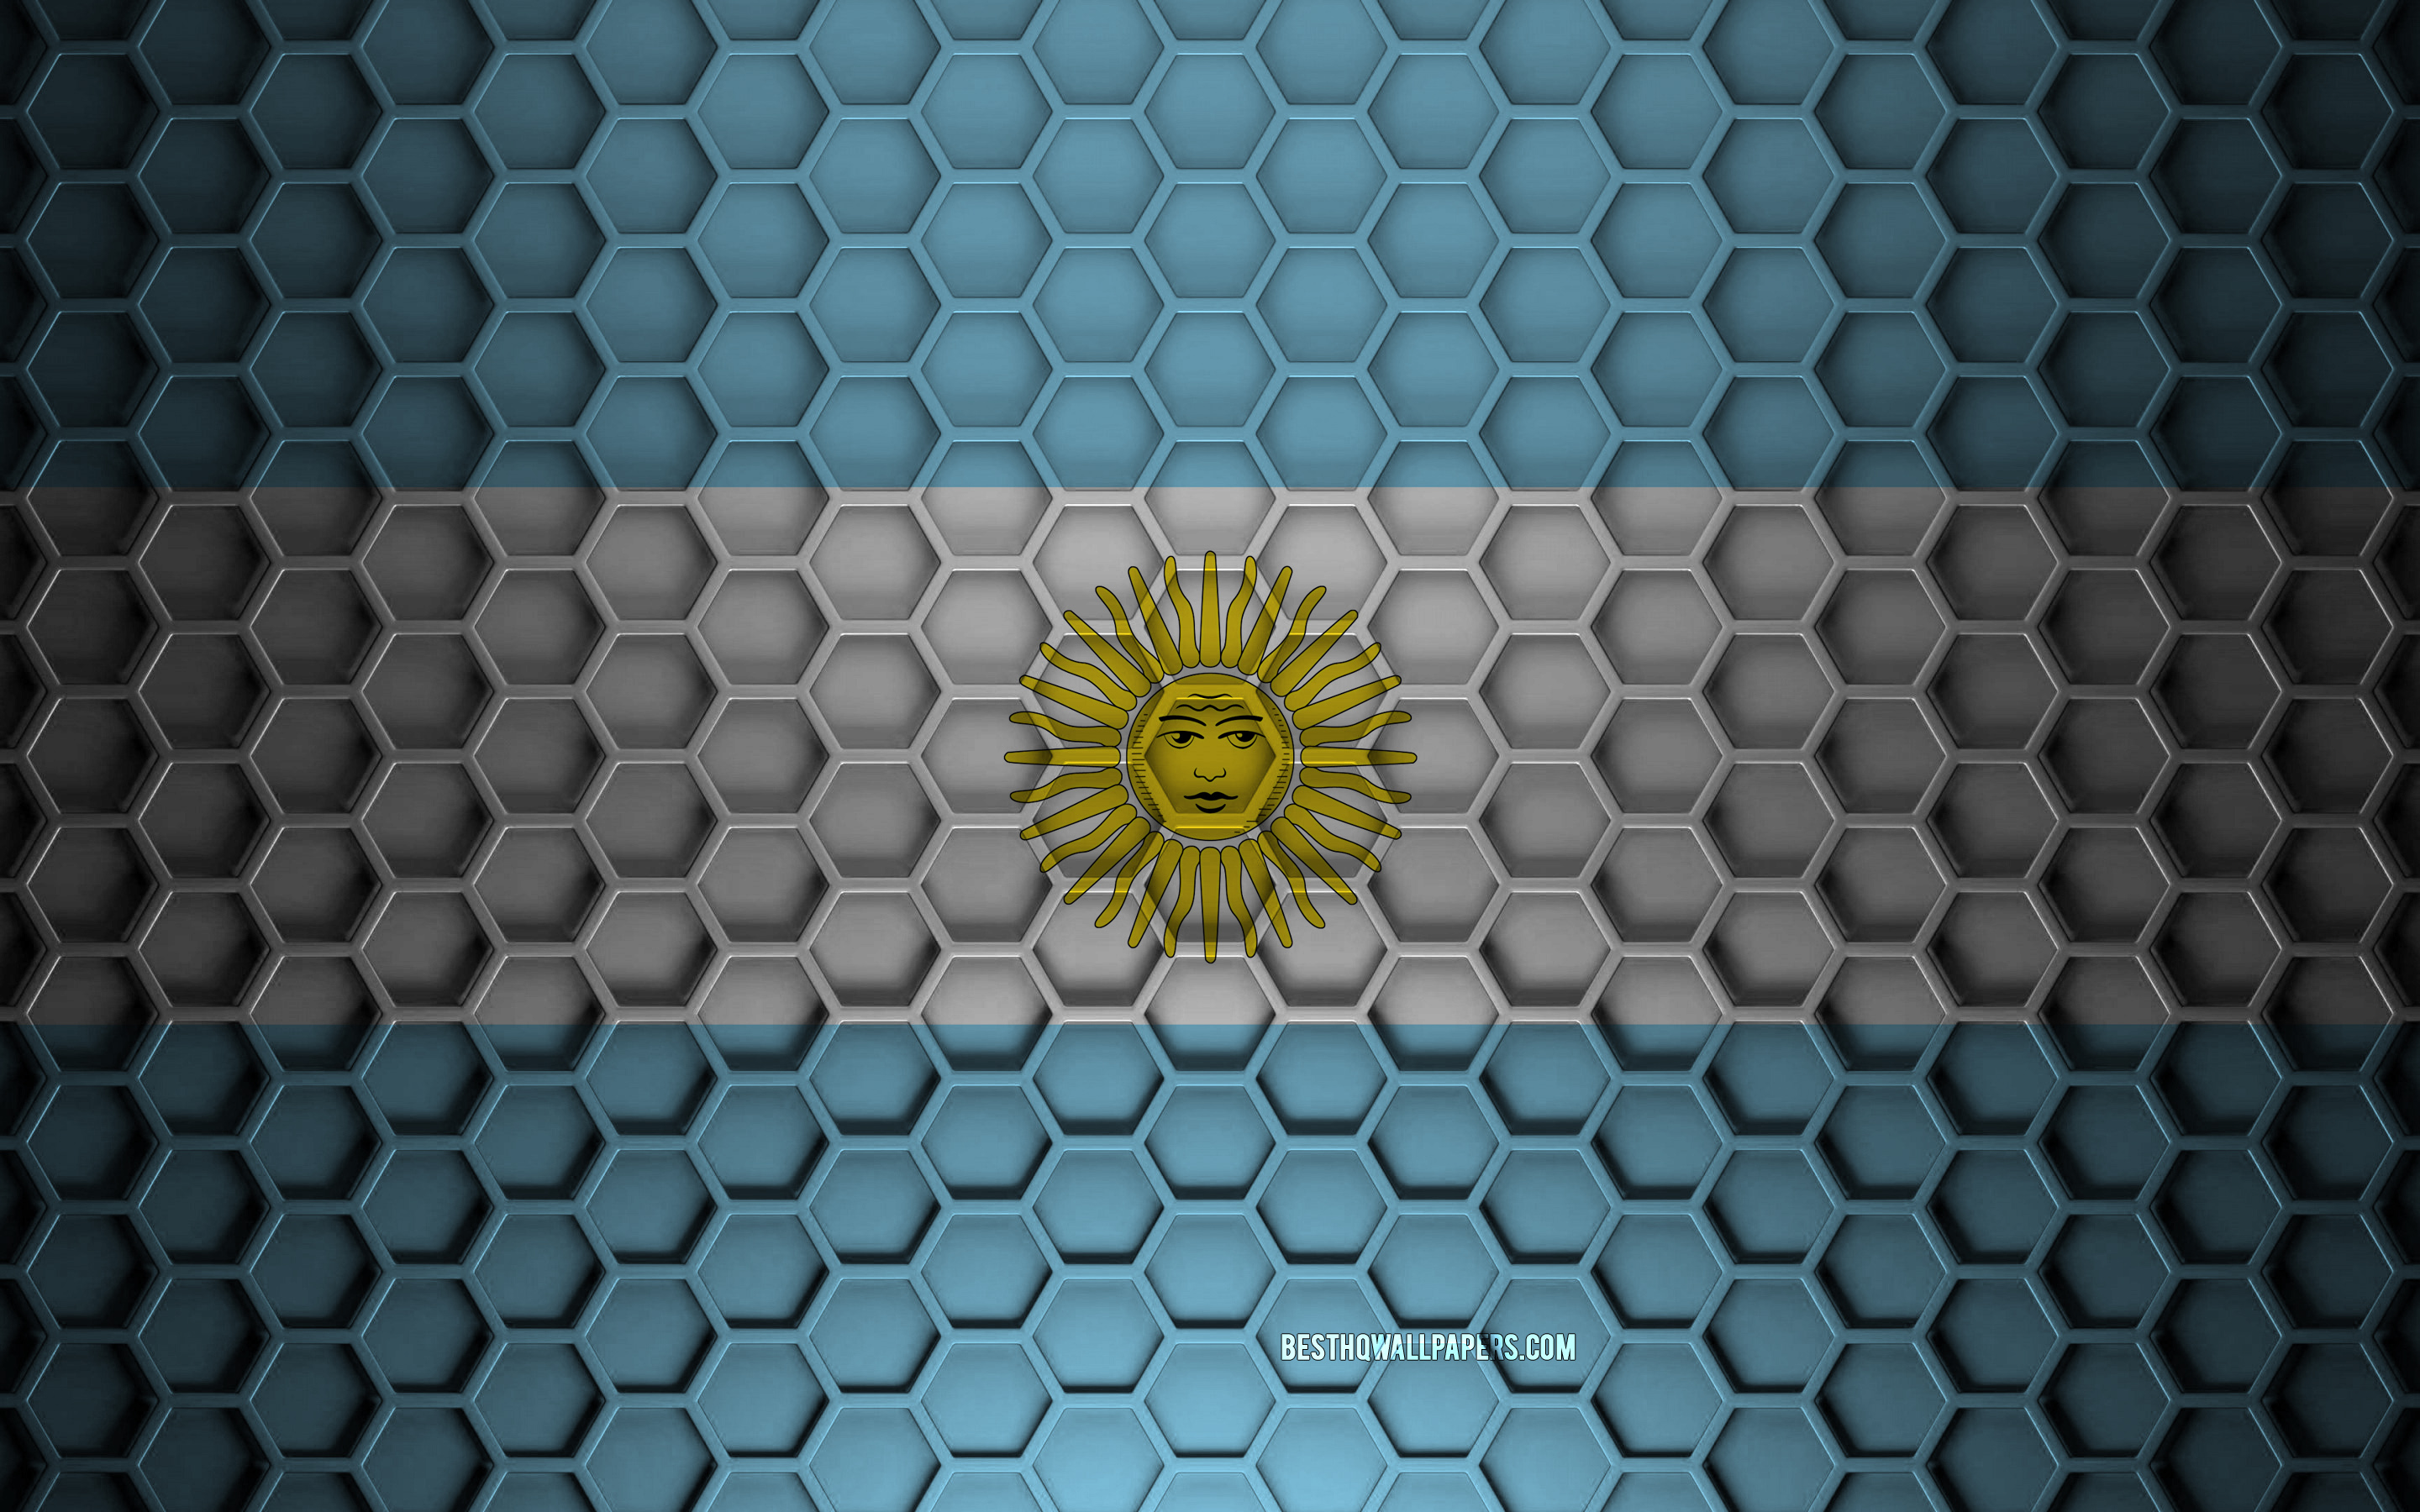 Descargar Fondos De Pantalla Bandera De Argentina Textura De Hexágonos 3d Argentina Textura